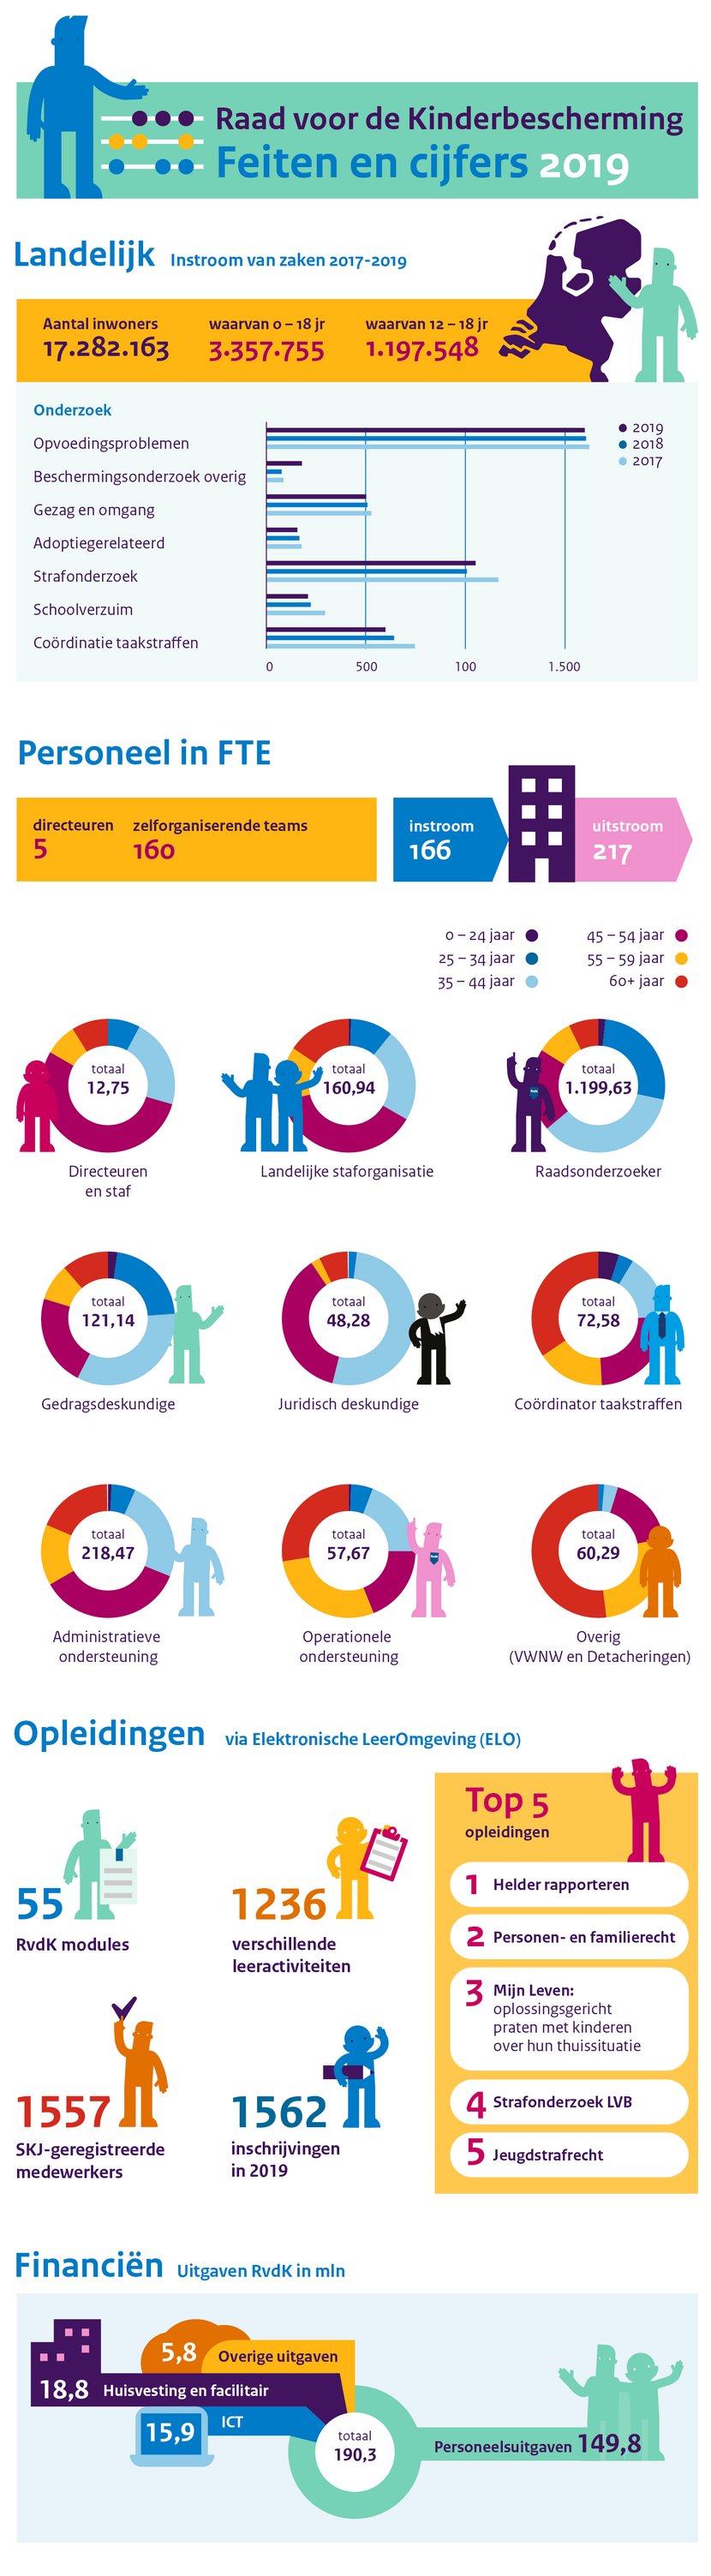 Infographic met feiten en cijfers van de RvdK over 2019